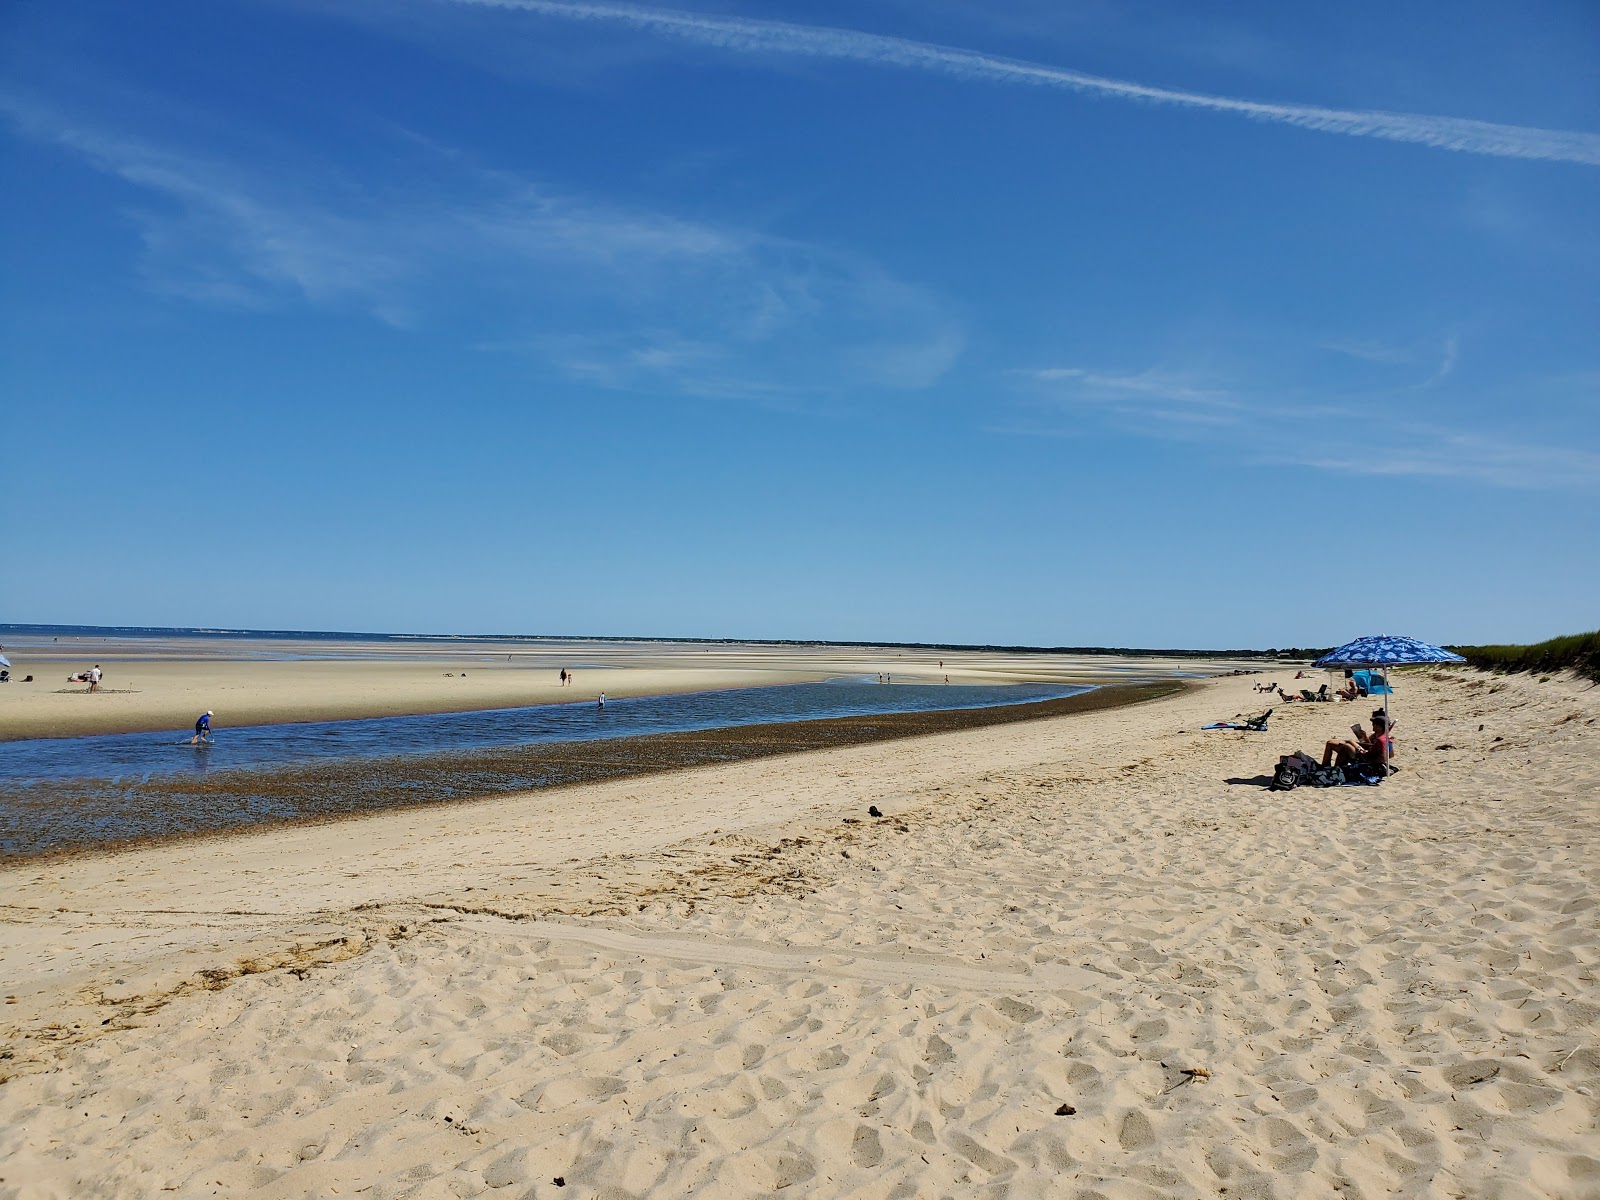 Fotografie cu Crosby Landing beach cu o suprafață de apa pură turcoaz